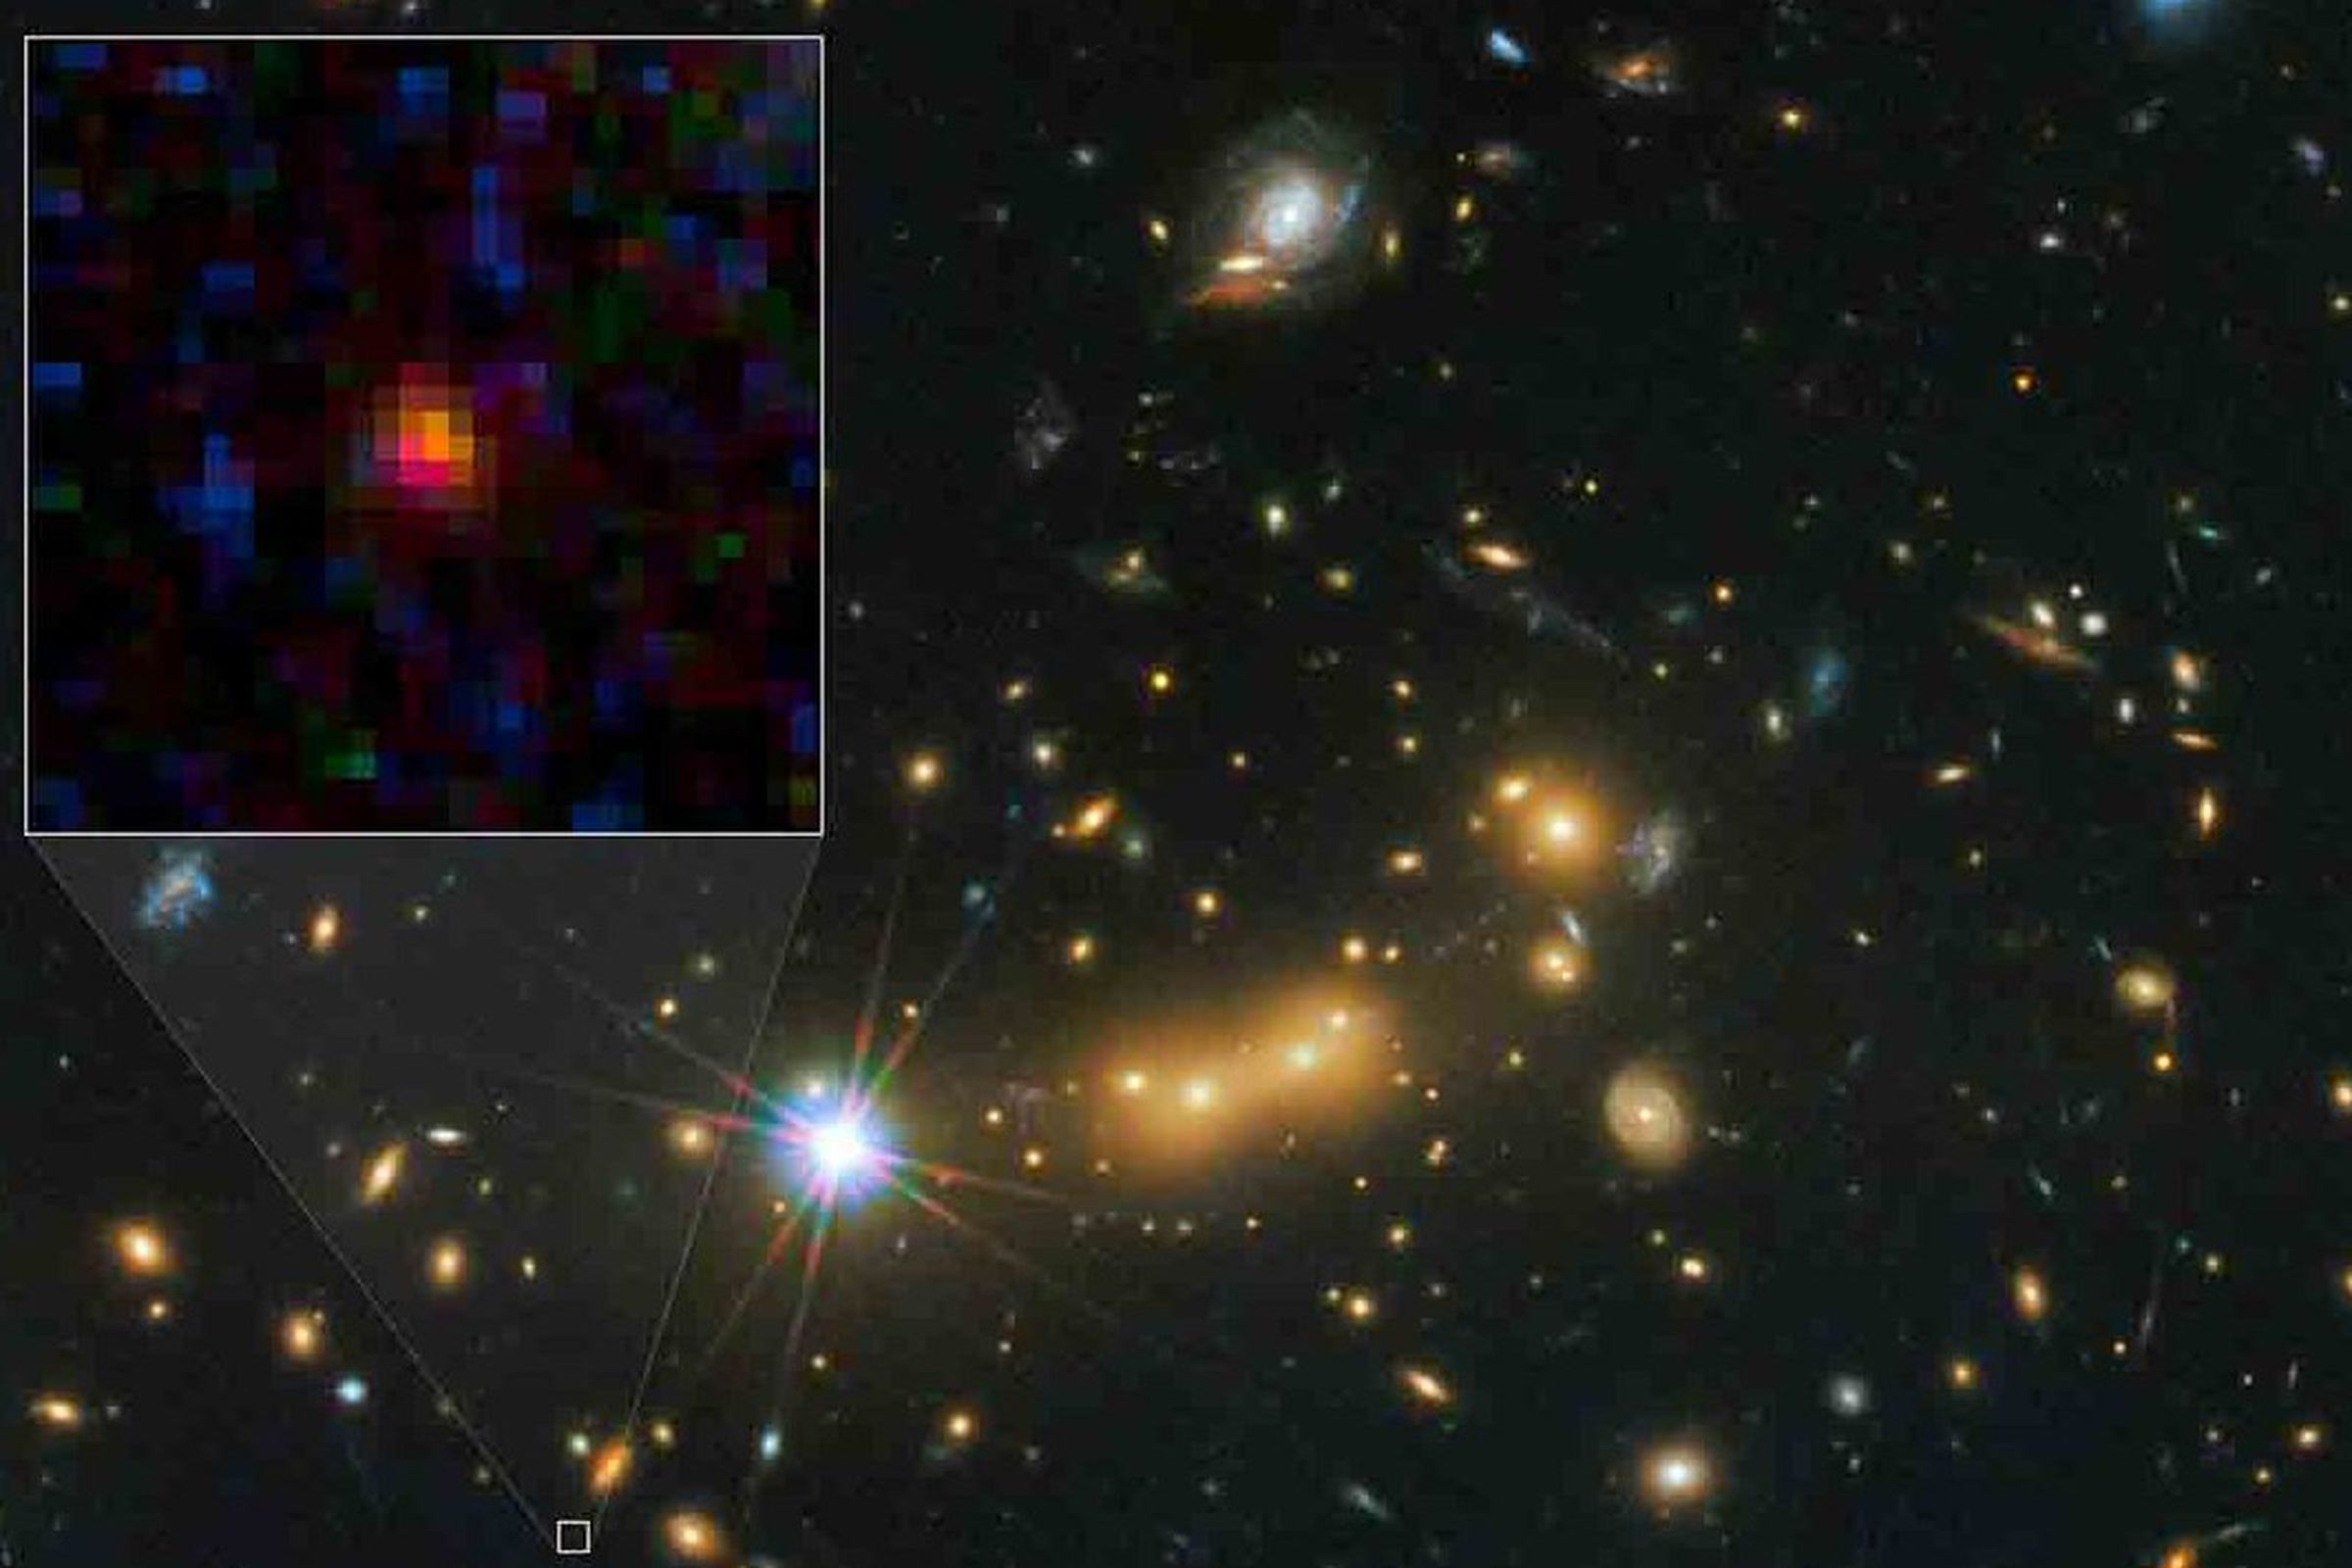 galaxy MACS0647-JD